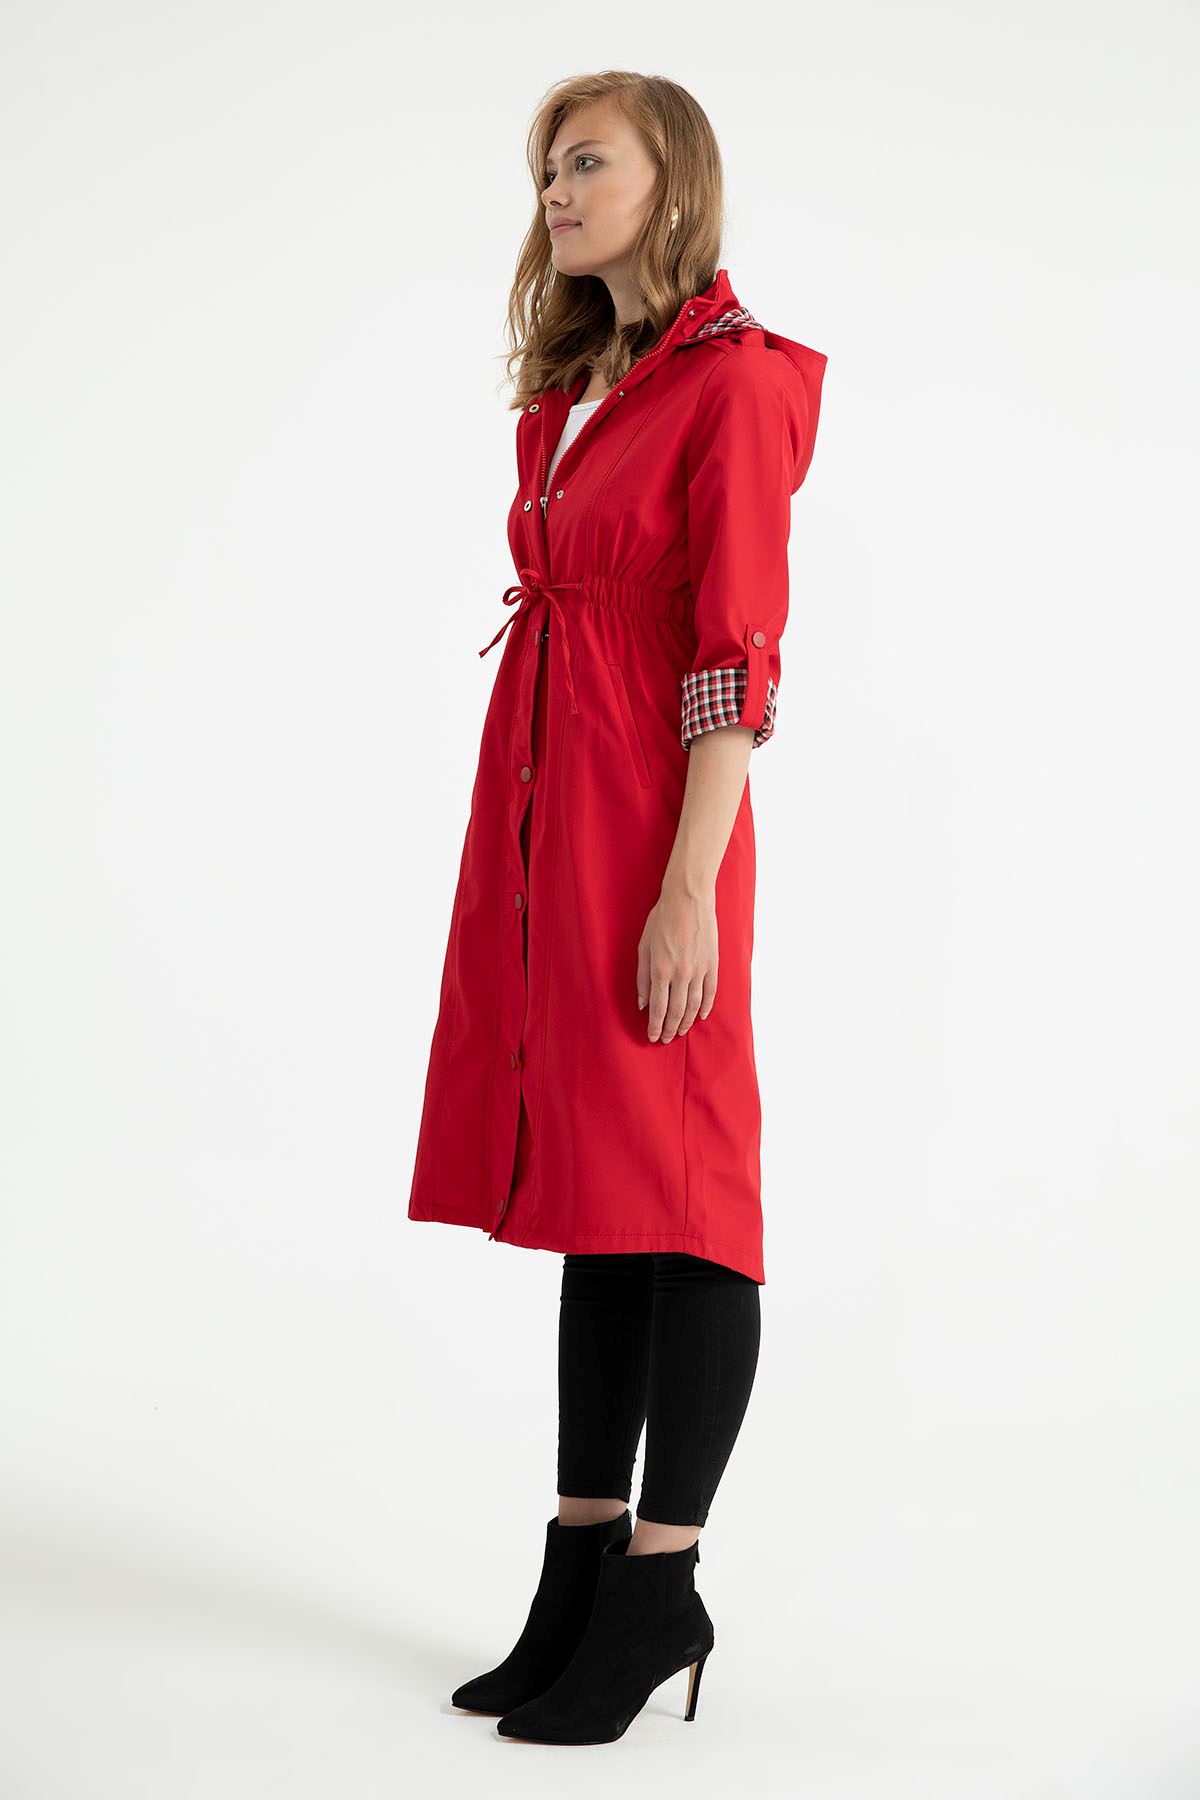 Woven Fabric Zip Neck Women Raincoat - Red